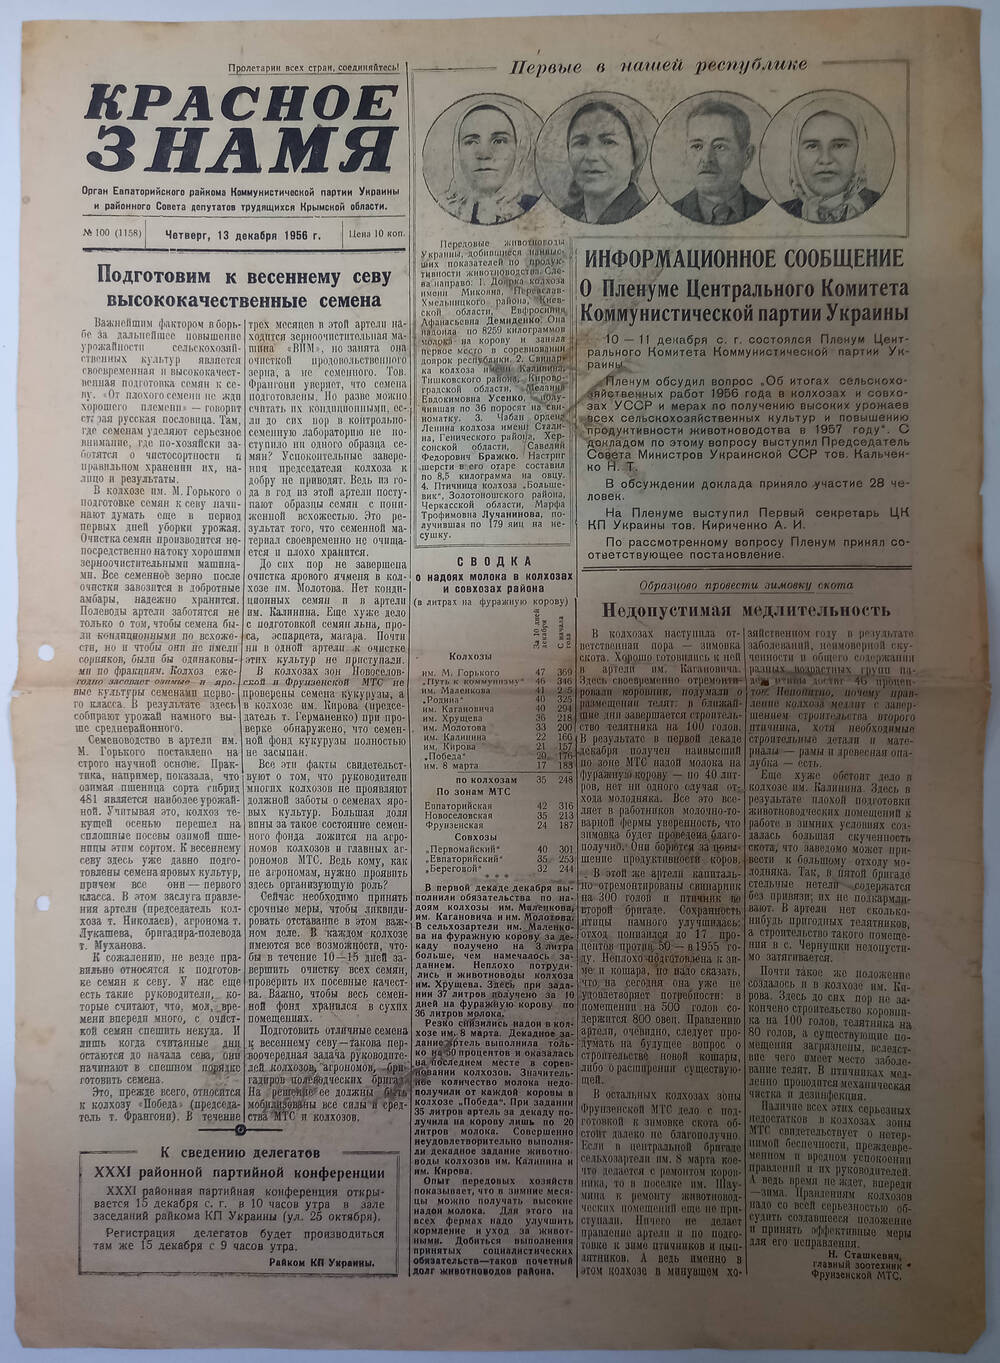 Газета Красное знамя №100(1158) от 13.12.1956 г.